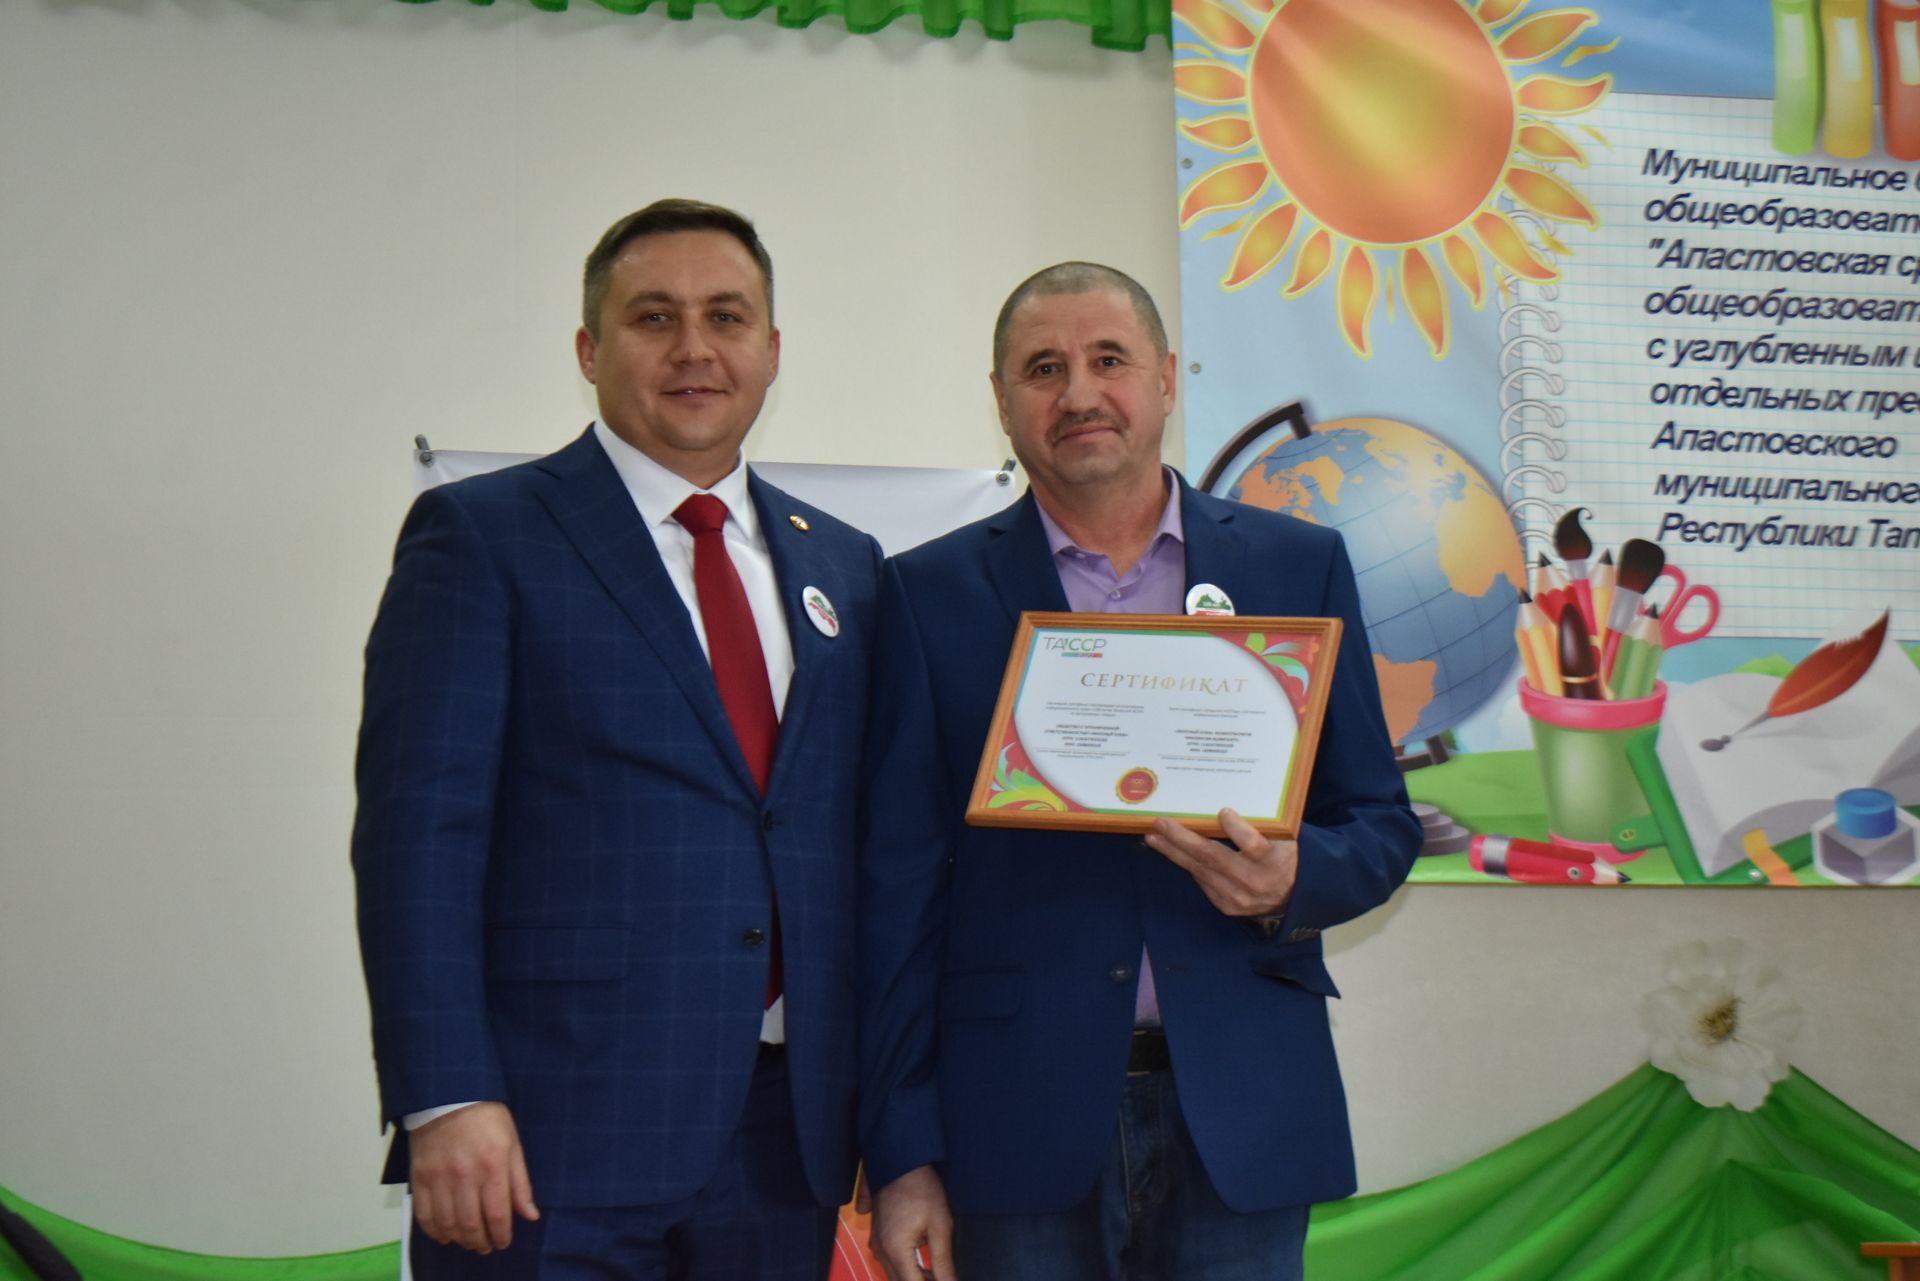 Апаста эшмәкәрләр ТАССРның 100 еллыгы уңаеннан сертификатлар алды